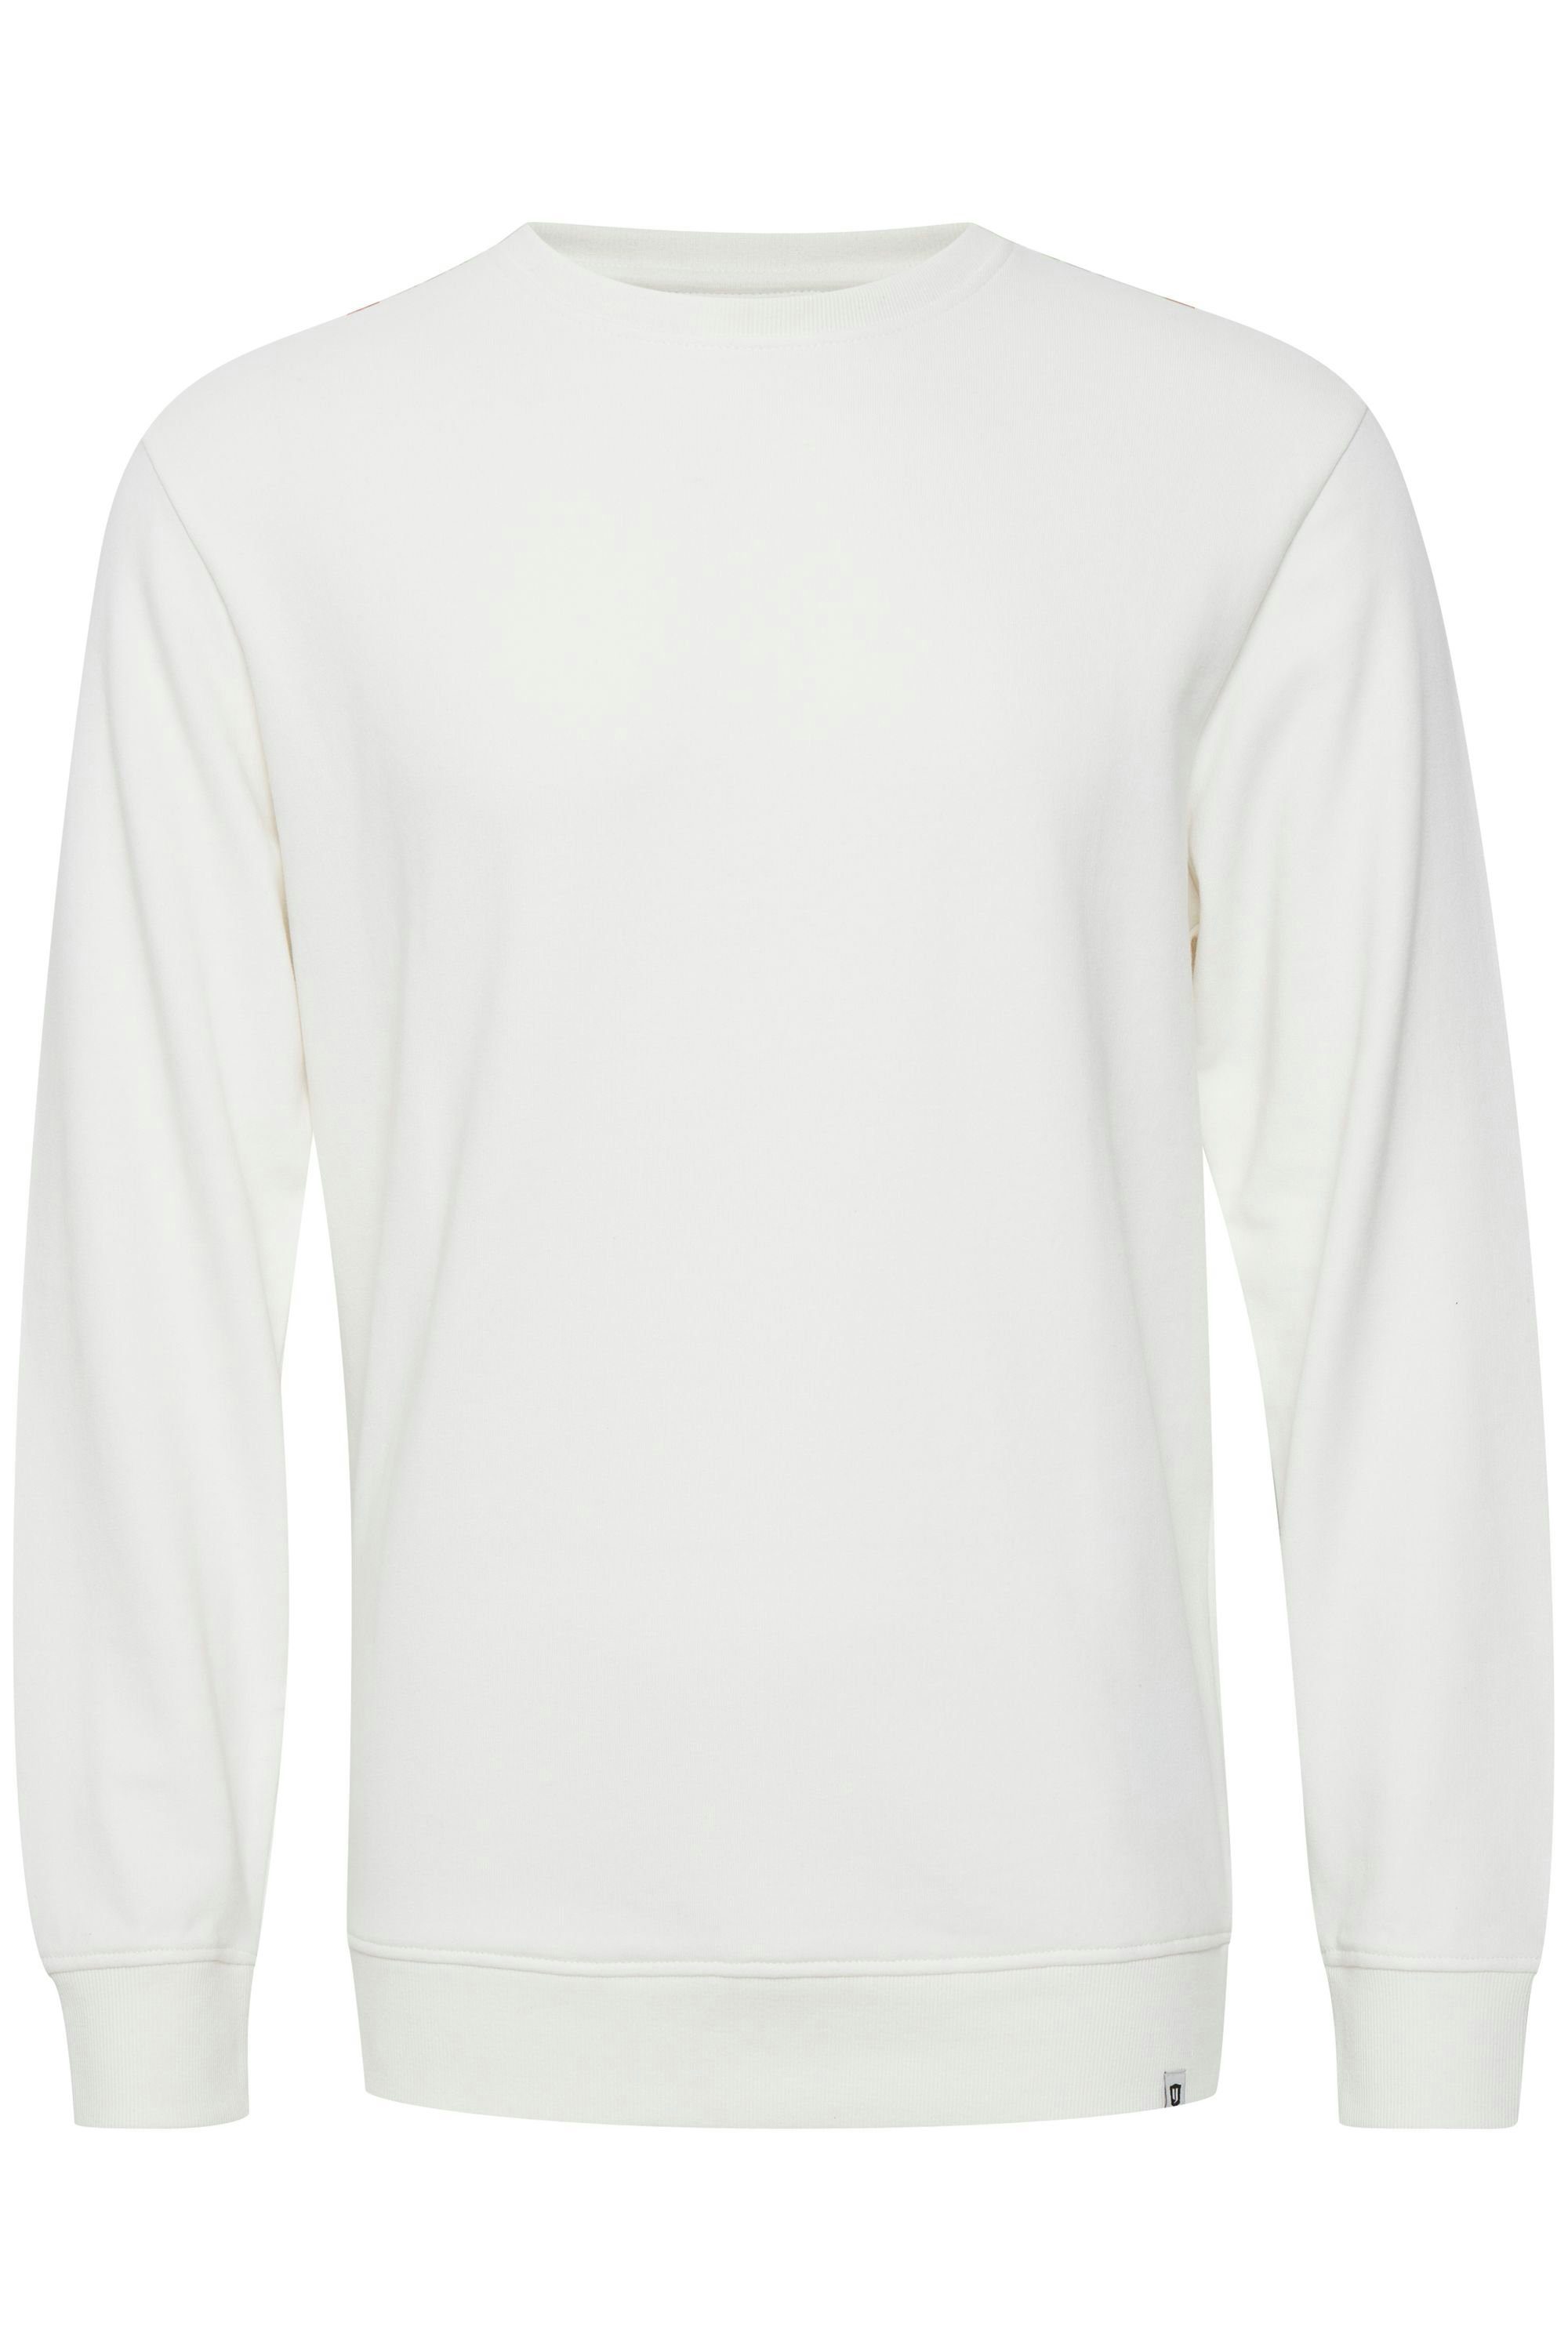 Indicode Sweatshirt IDKeno Sweatpulli Off-White (002)